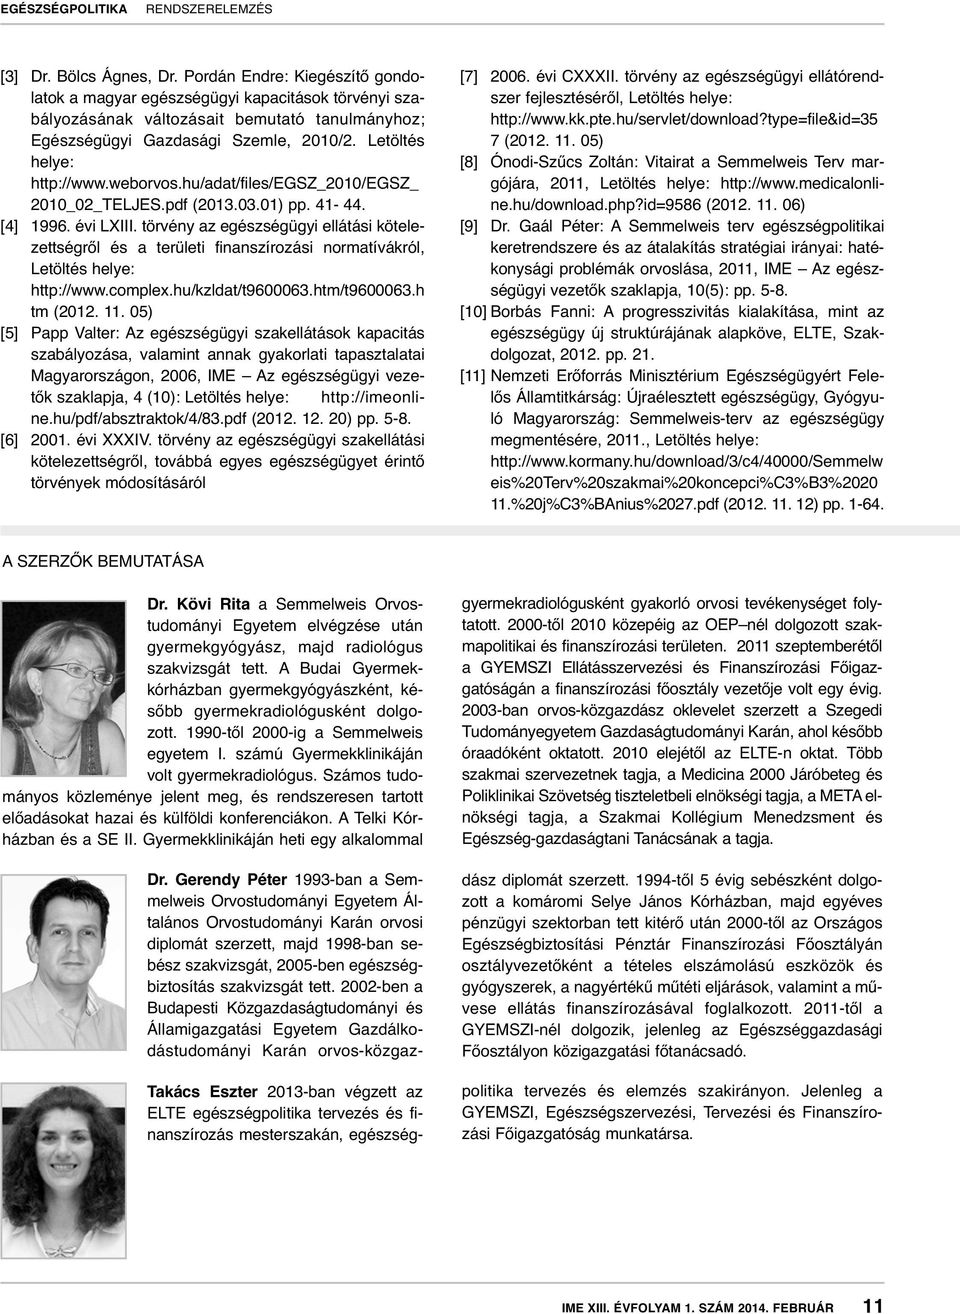 törvény az egészségügyi ellátási kötelezettségről és a területi finanszírozási normatívákról, Letöltés helye: http://www.complex.hu/kzldat/t9600063.htm/t9600063.h tm (2012. 11.